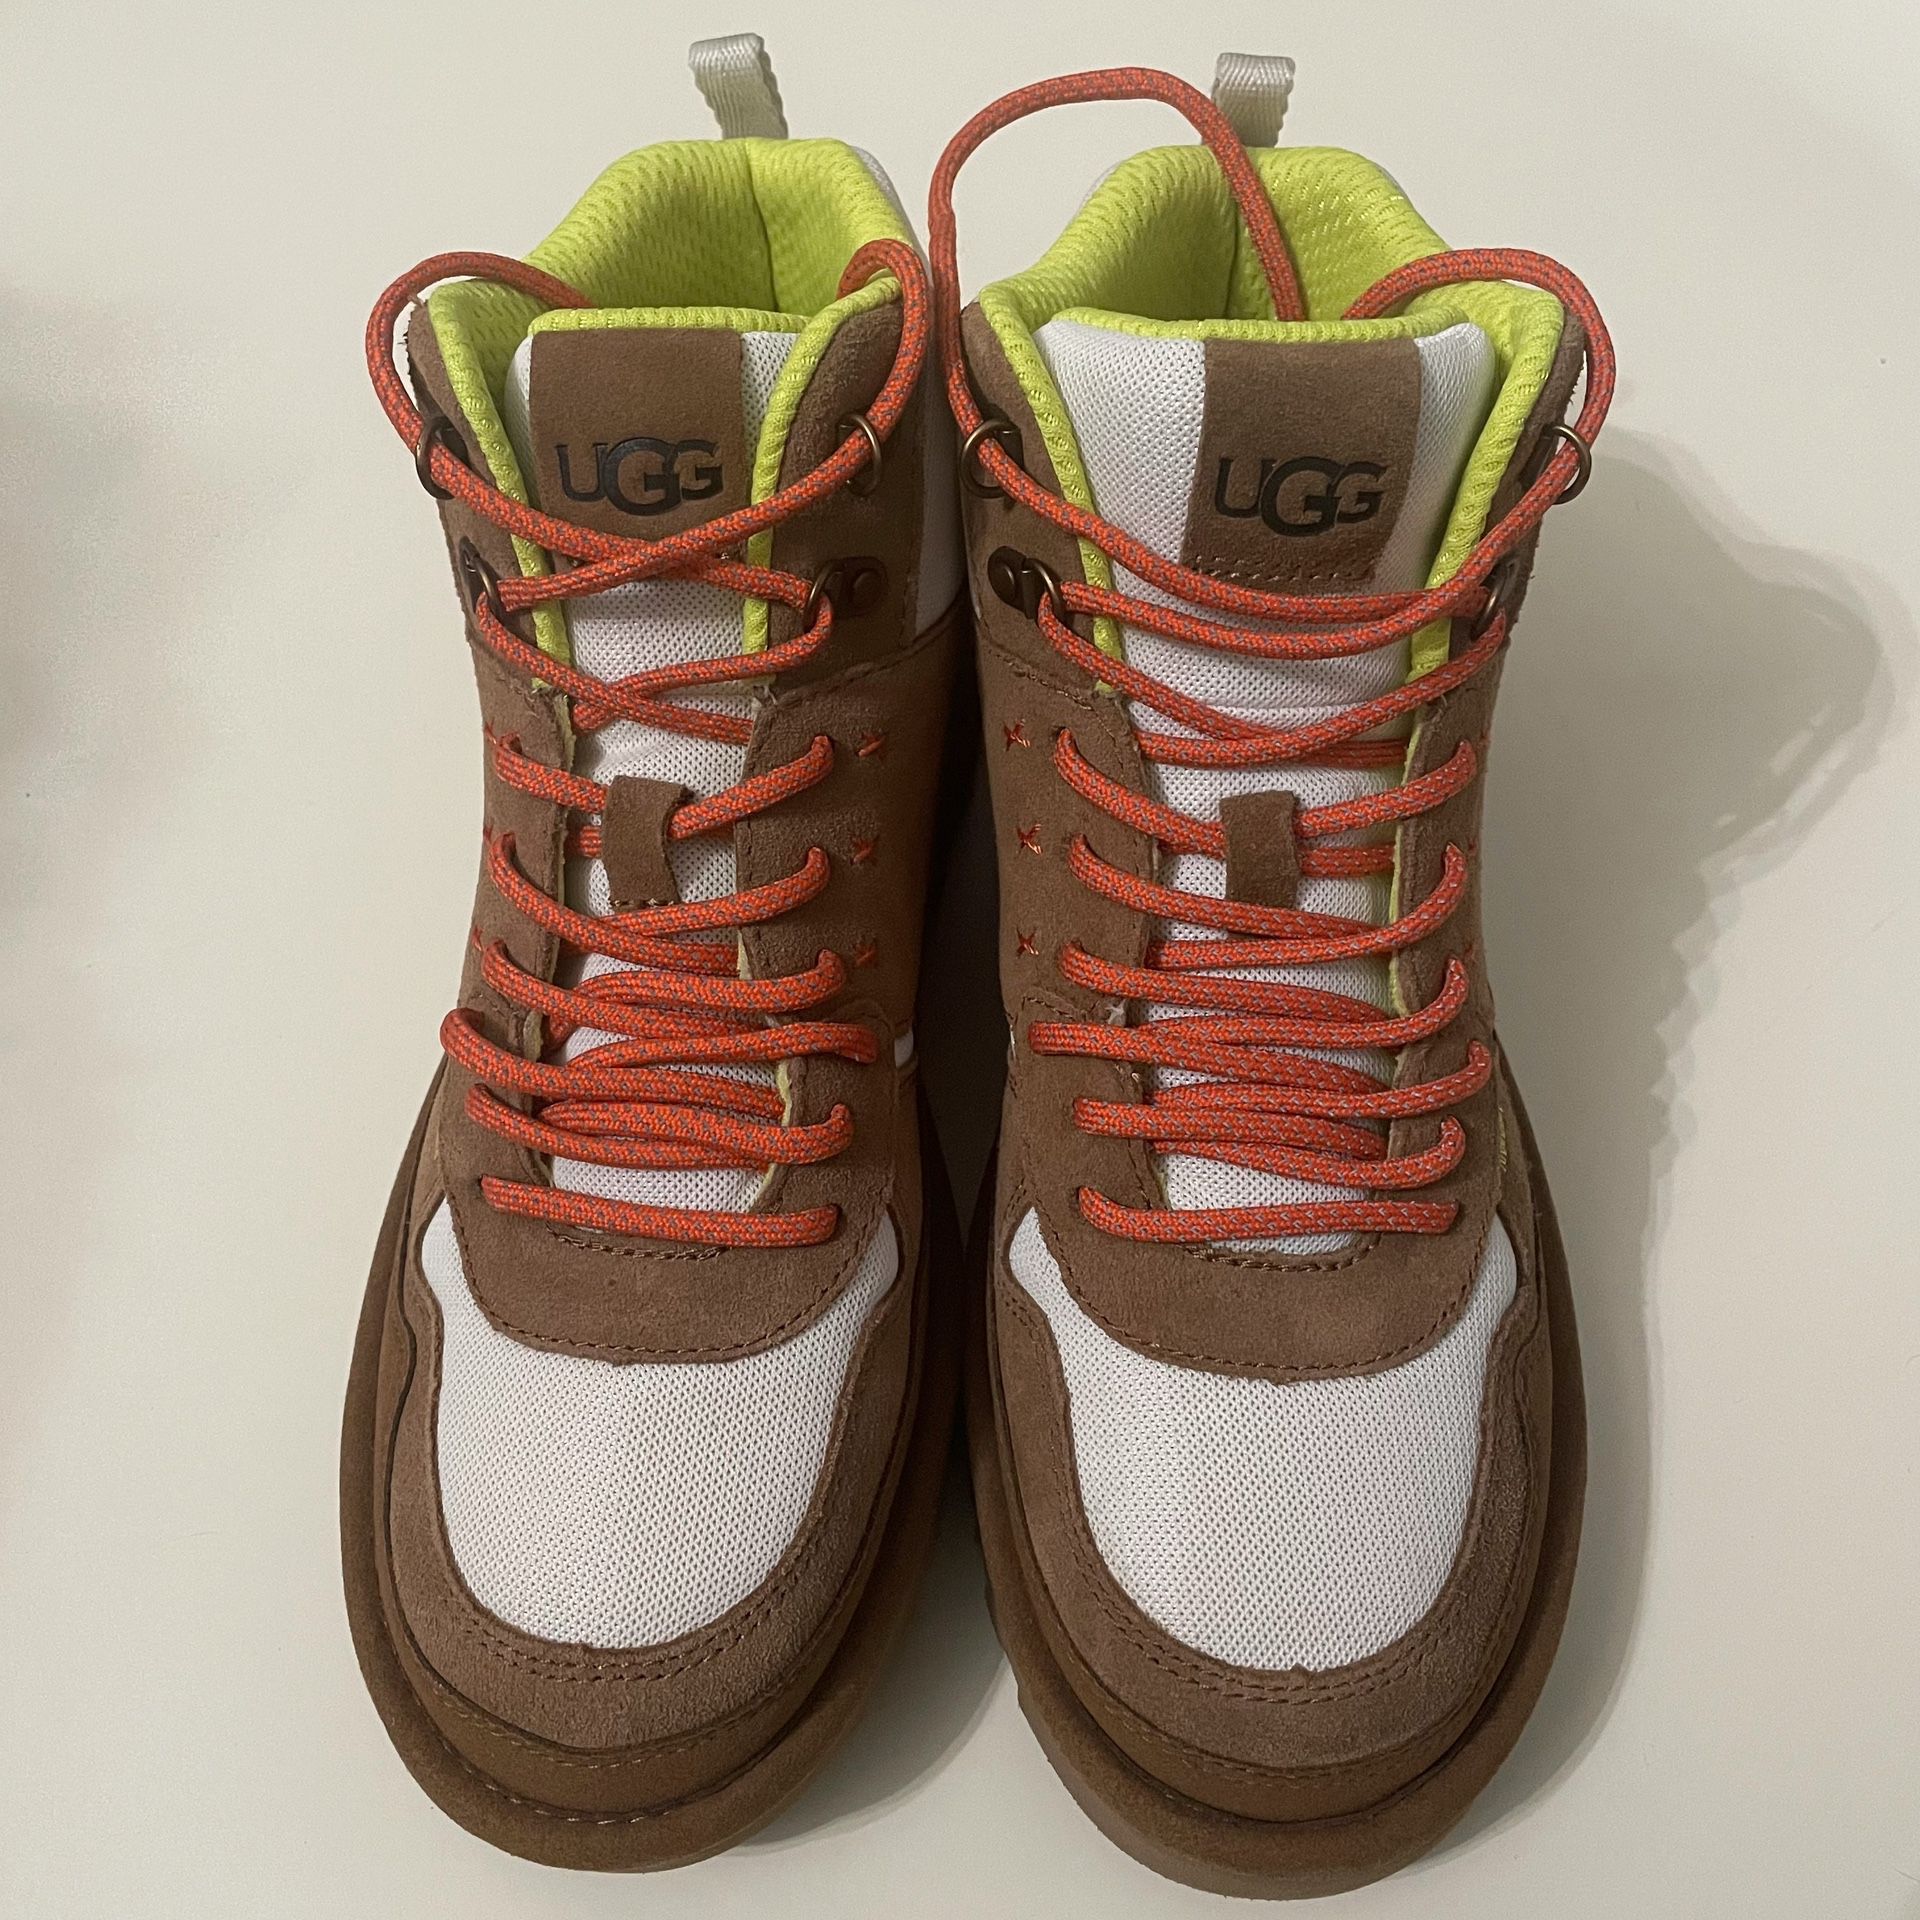 NWOT - UGG Highland Hi Heritage Mesh Sneakers in Chestnut - US Size 9/EU Size 40